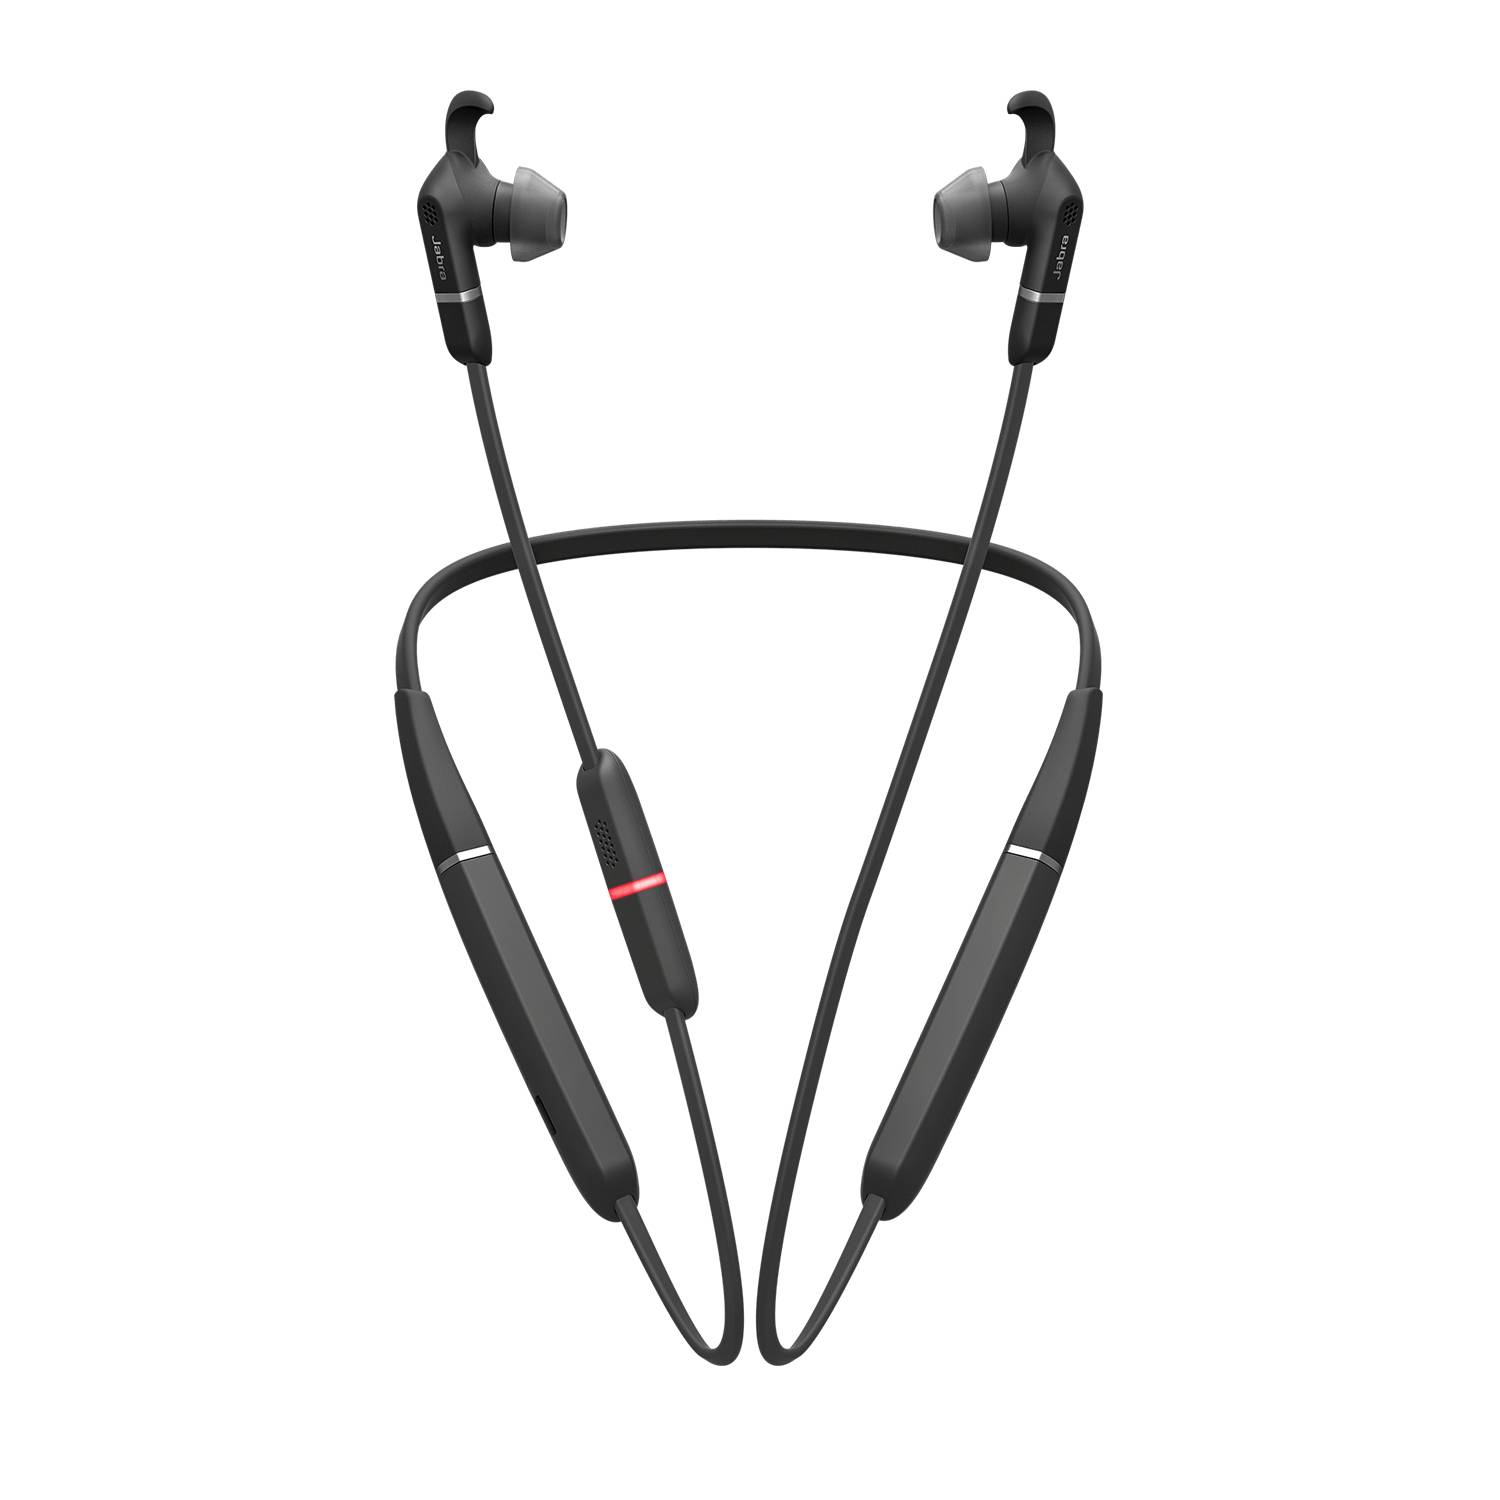 Rca Informatique - image du produit : JABRA EVOLVE 65E UC + LINK 370 EAR GELS EARWINGS USB CBLE